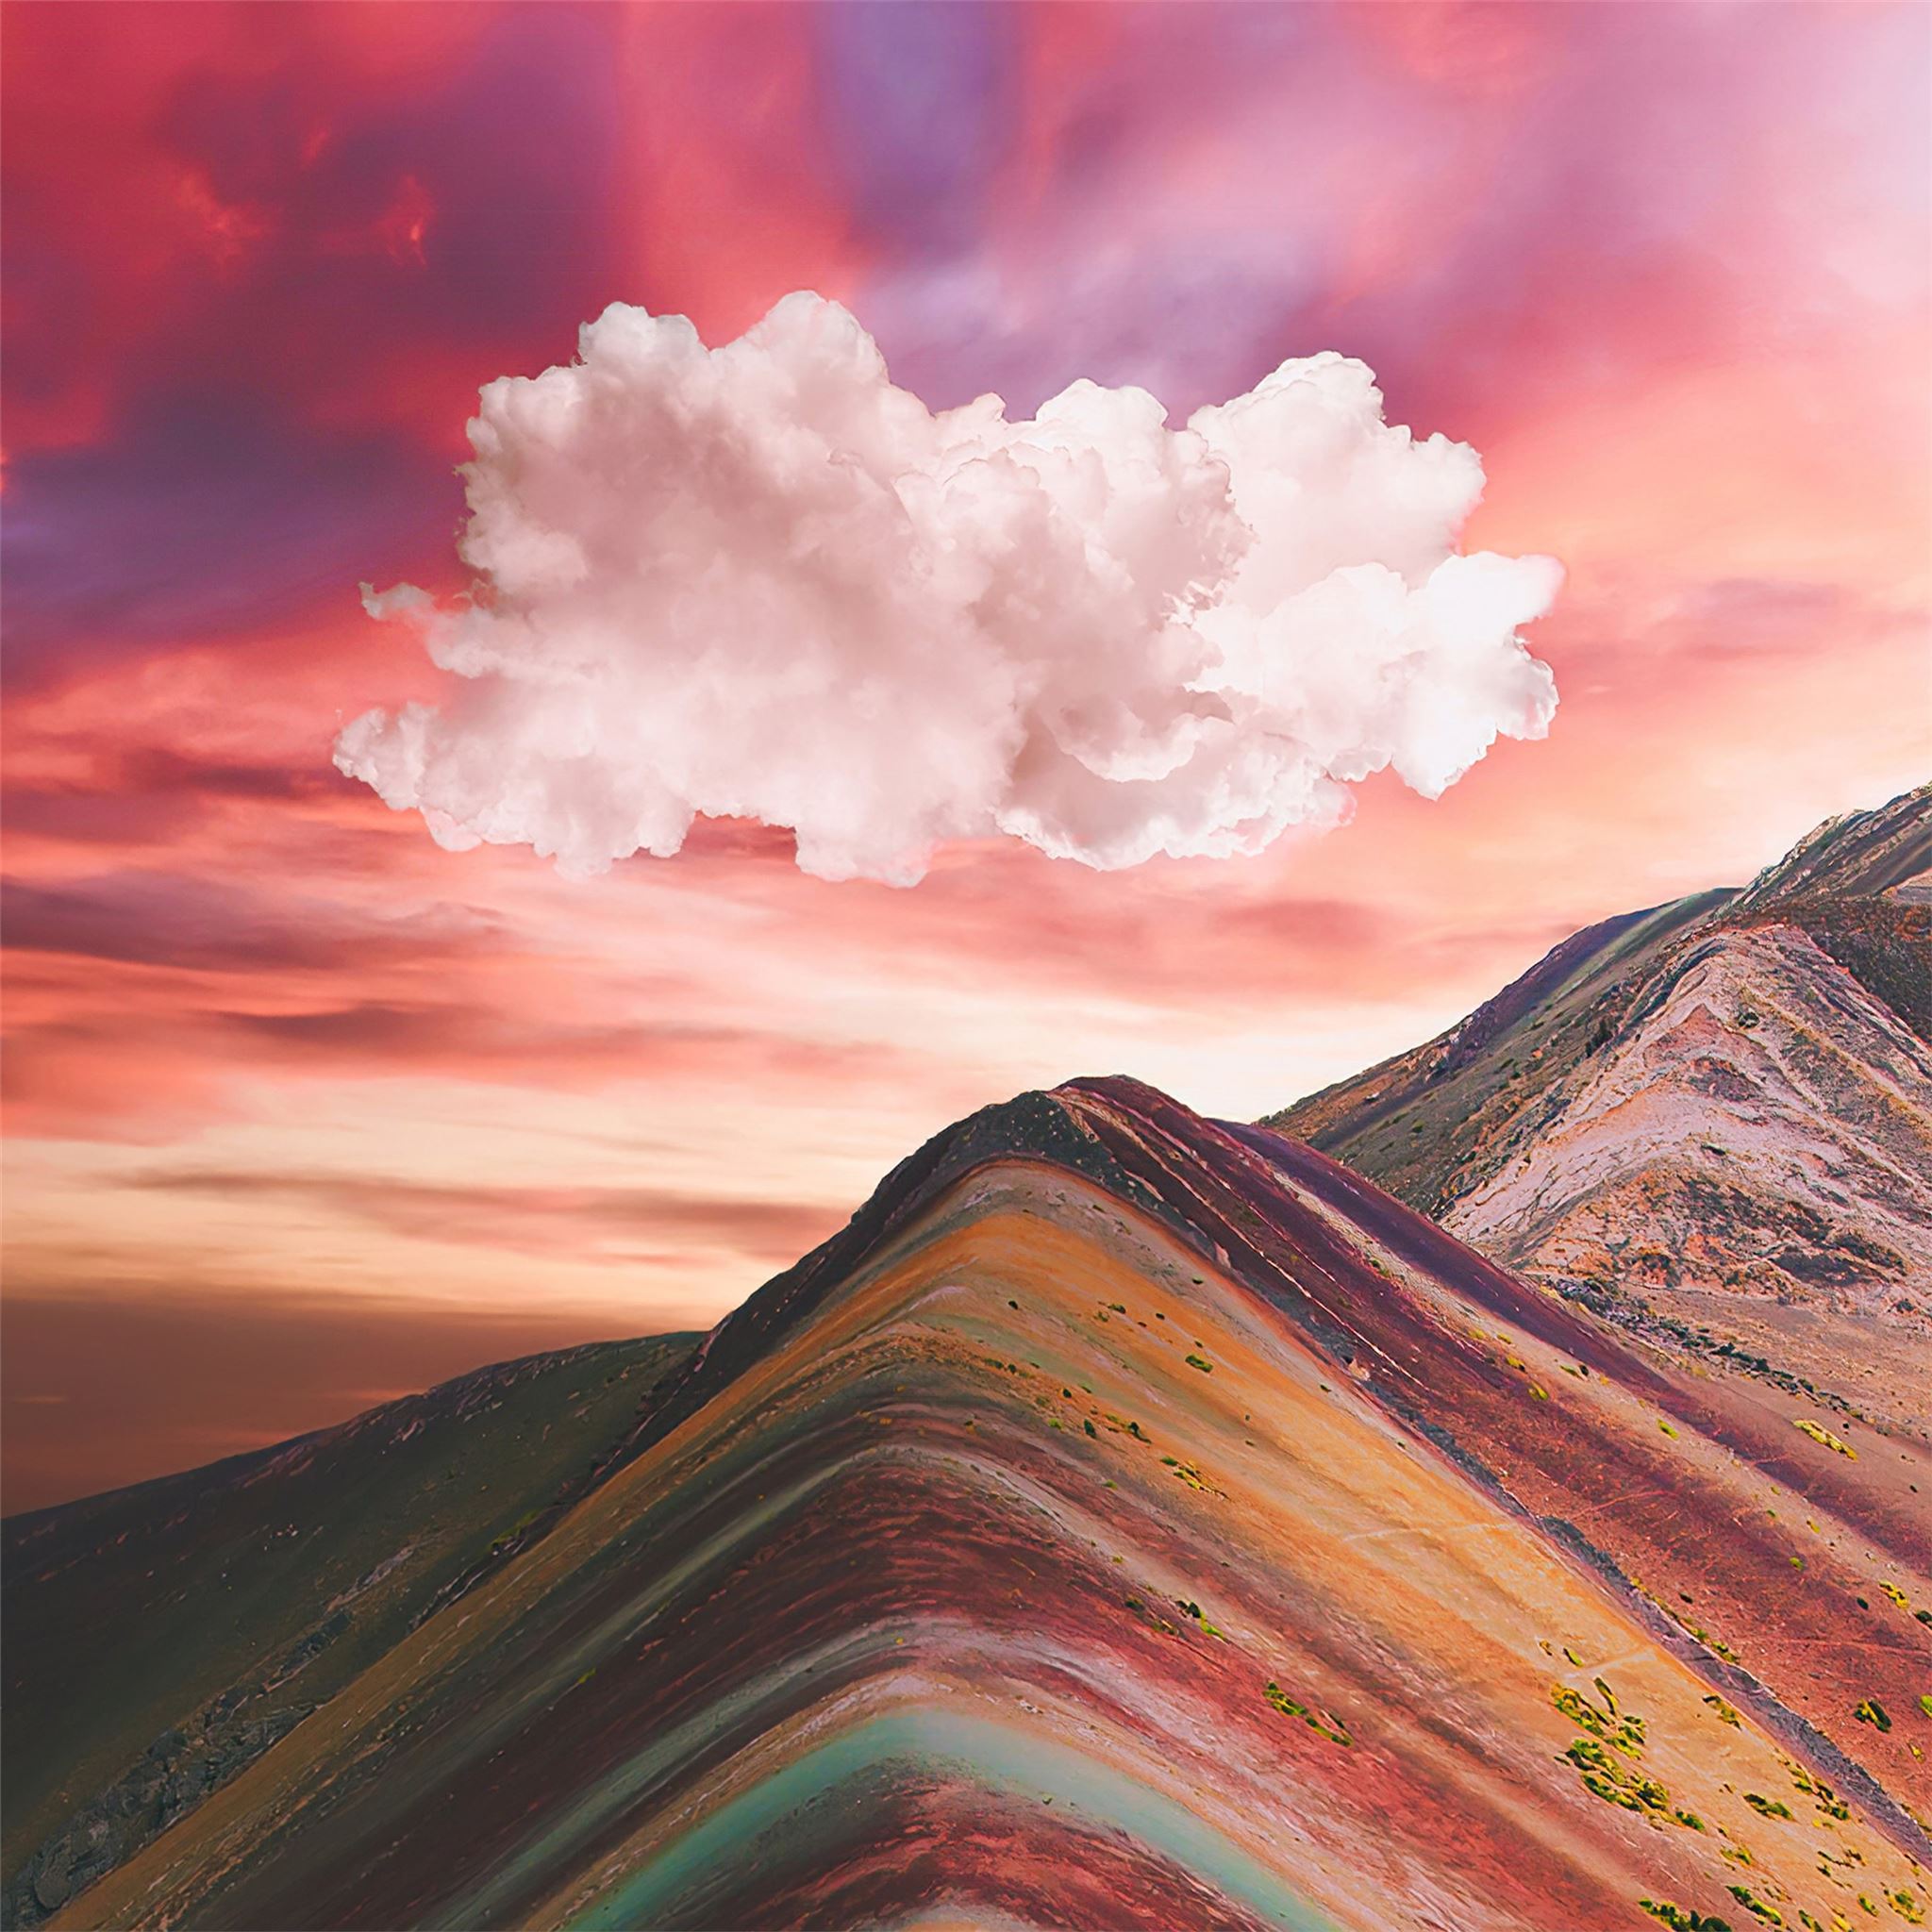 Sắc màu tuyệt đẹp của Rainbow Mountain chắc chắn sẽ khiến bạn cảm thấy thích thú và xao xuyến! Hãy chứng kiến cảnh tuyệt vời này và cho mình một ngày tràn đầy màu sắc.